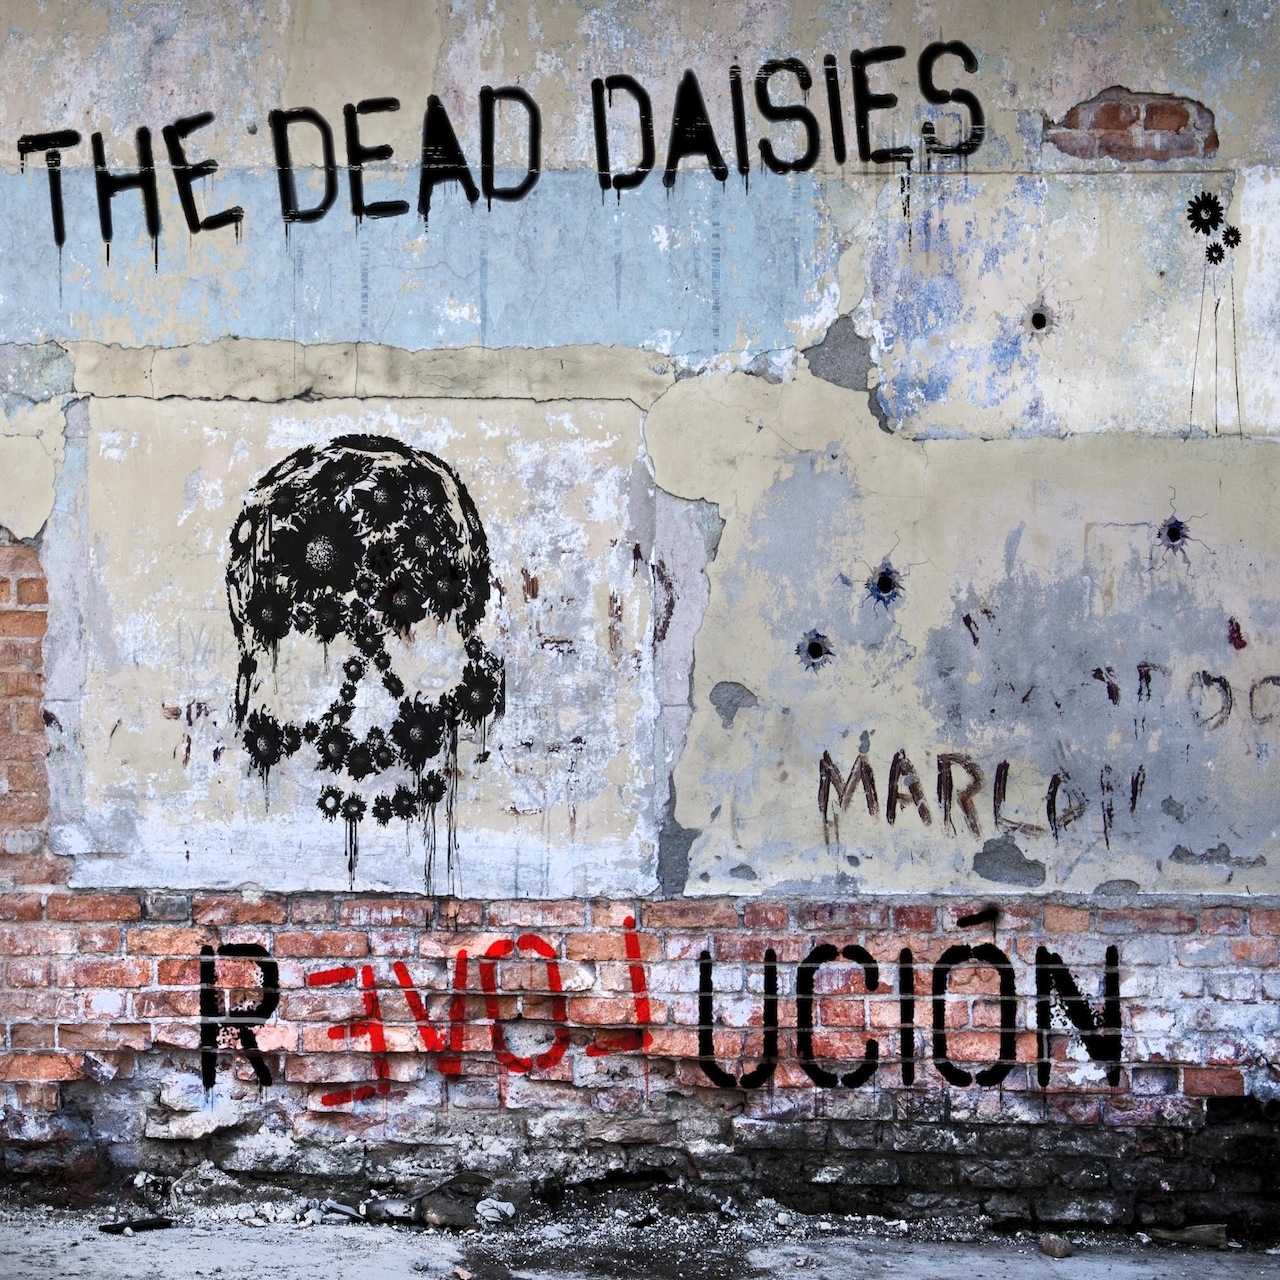 The Dead Daisies "REVOLUCIÓN"